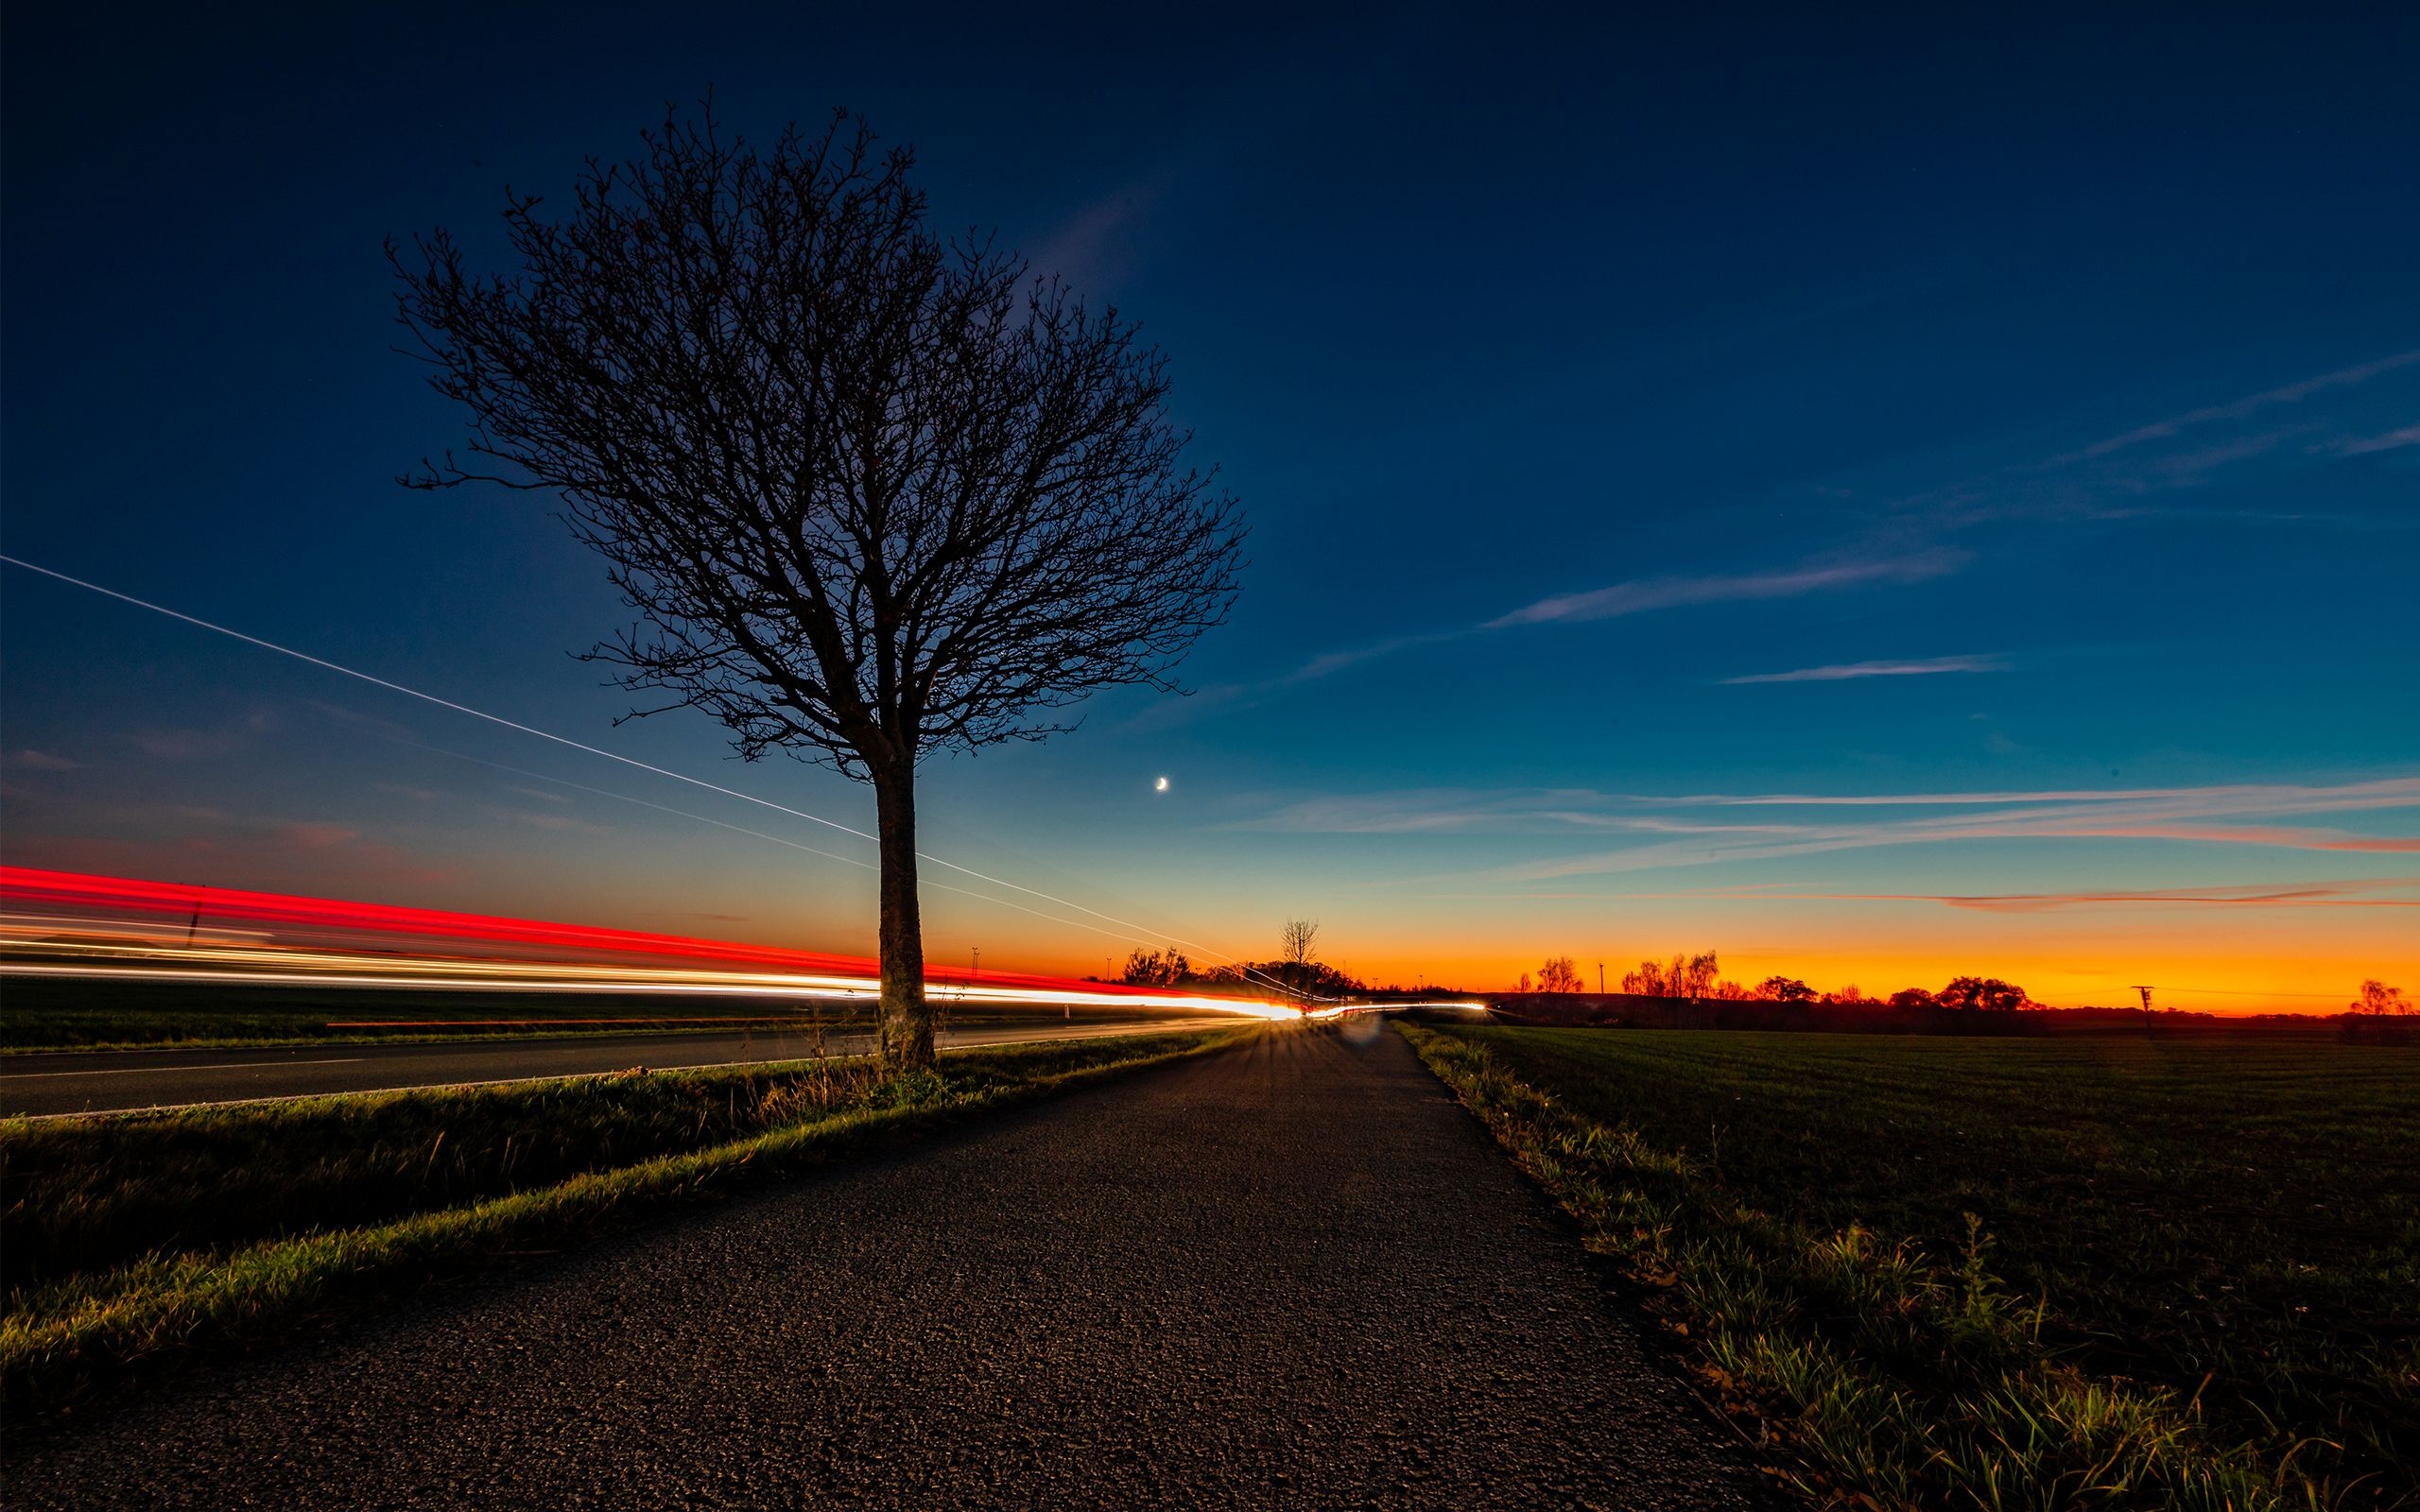 Ein Landschaftsfoto mit Sonnenuntergang, ein Baum steht am Straßenrand während Fahrzeuge vorbeifahren